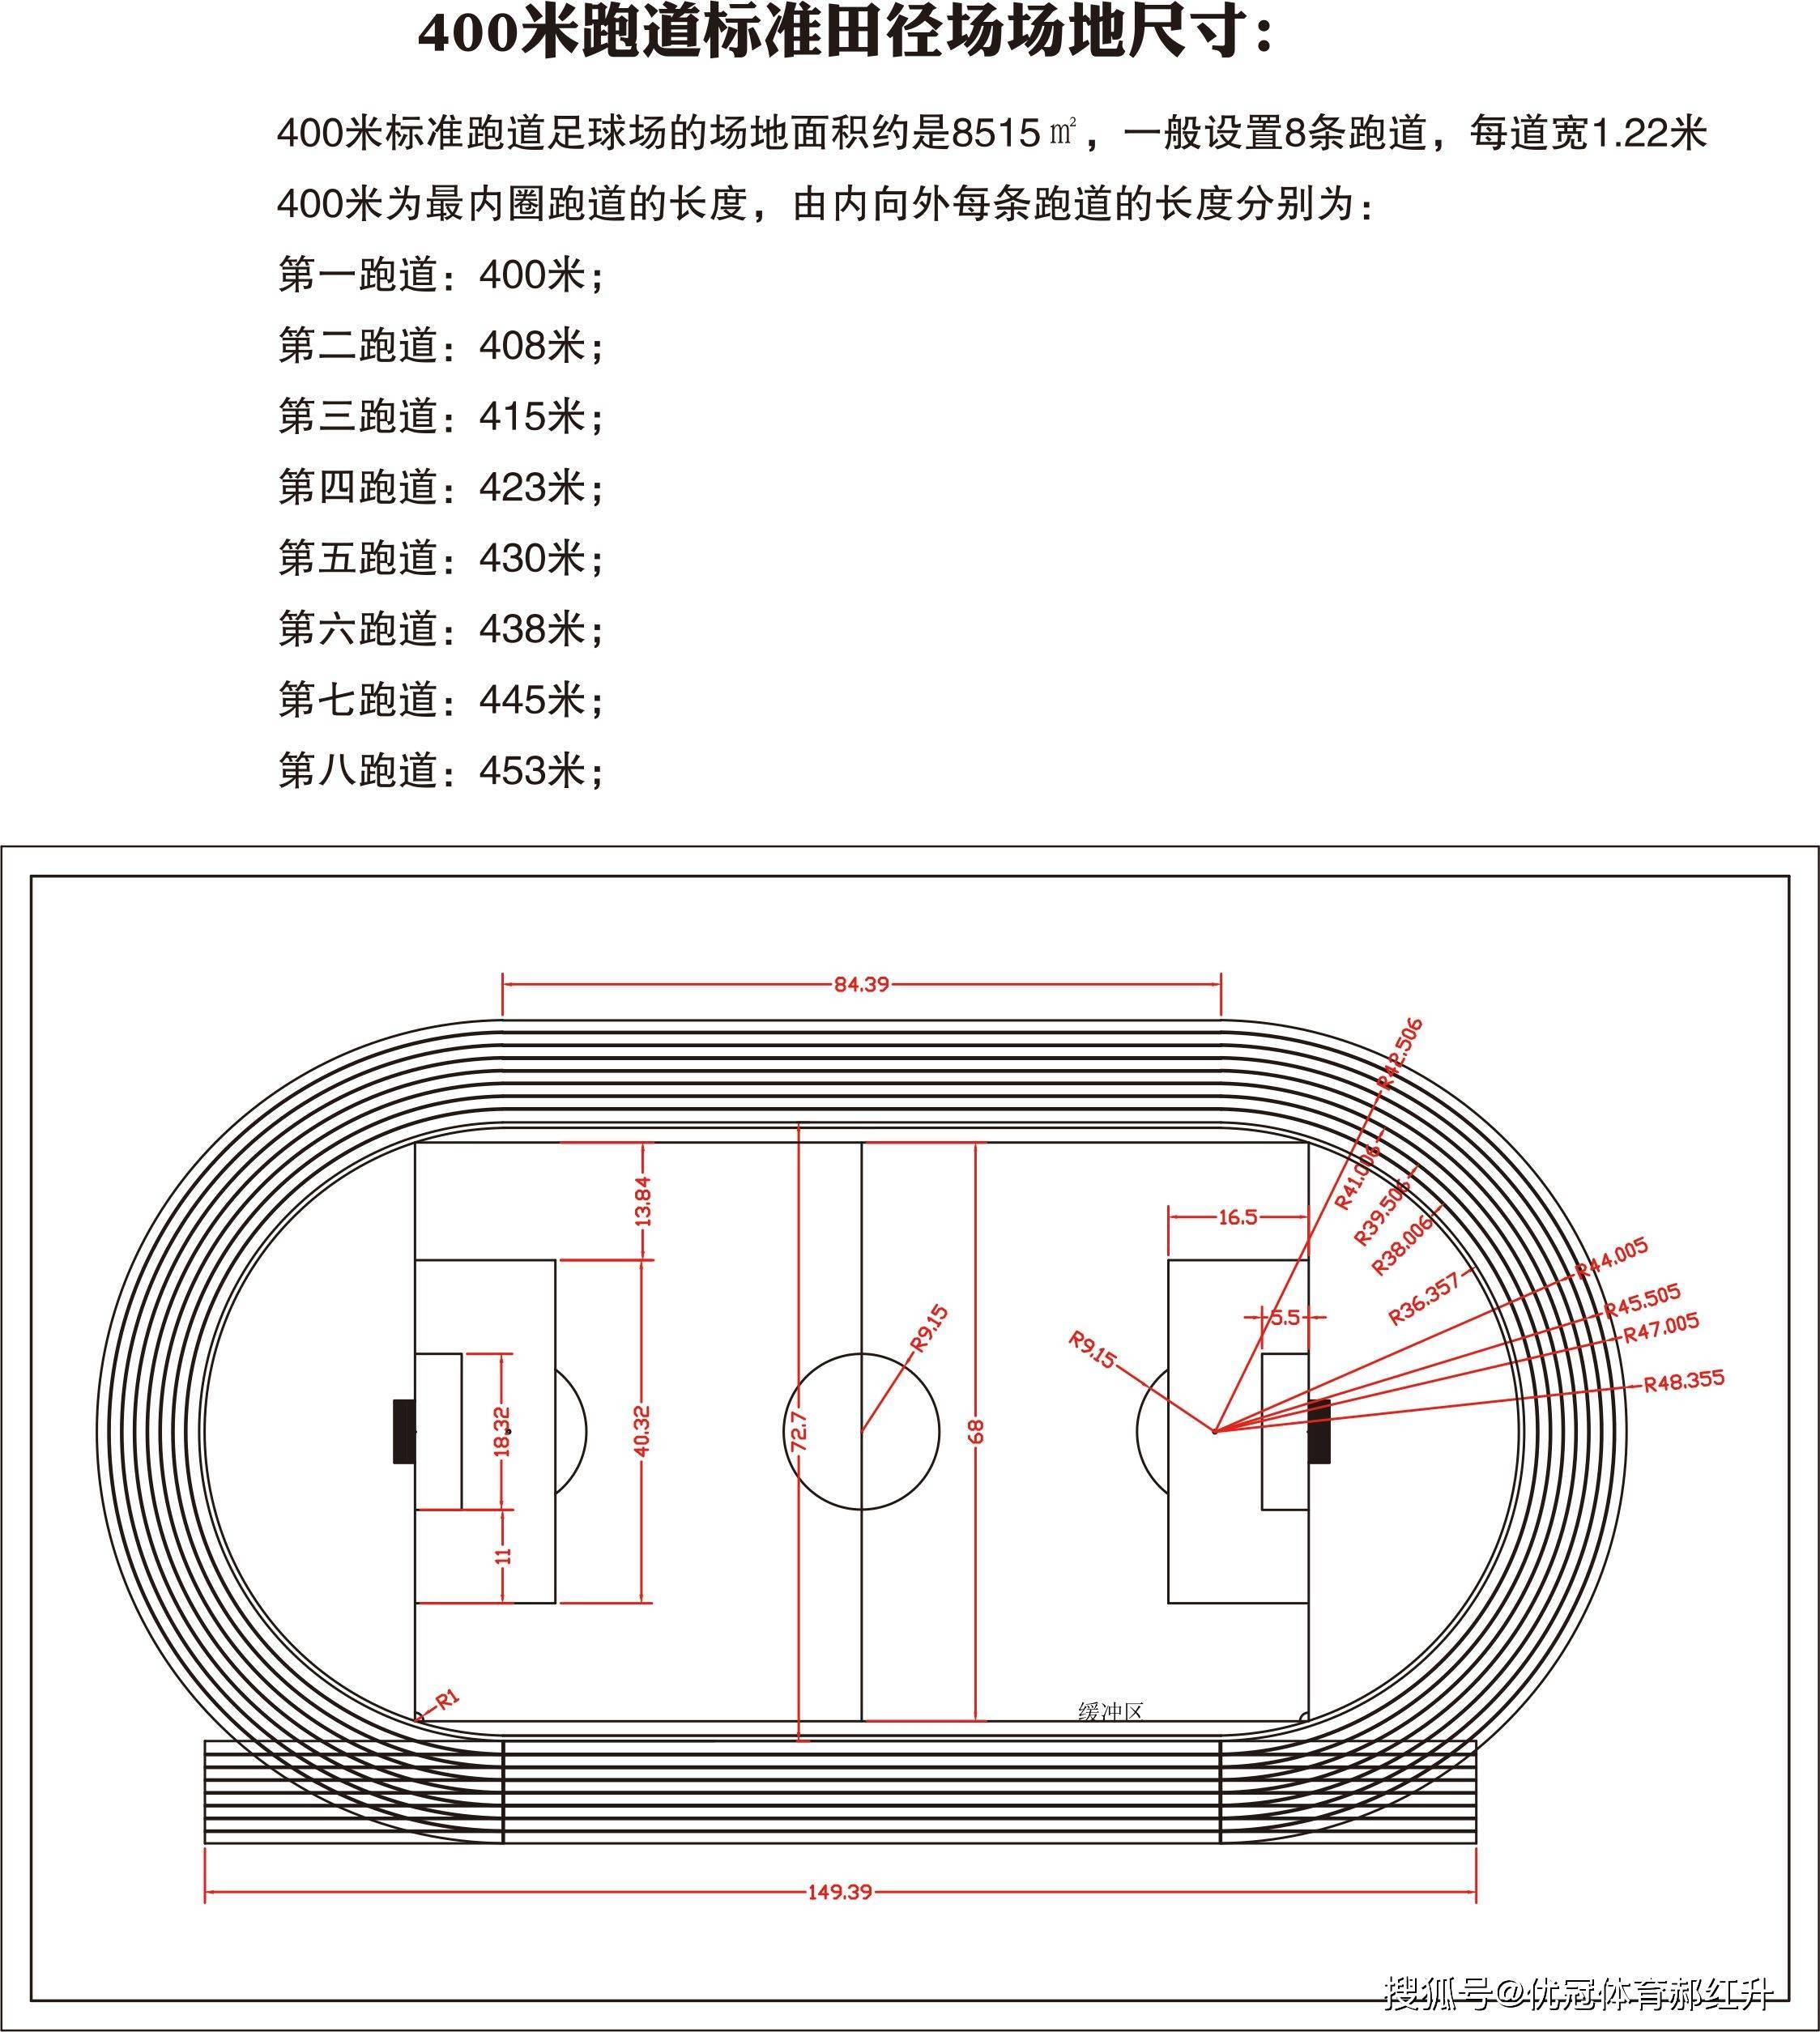 环形塑胶跑道标准尺寸—400米标准跑道尺寸,300米跑道尺寸,200米